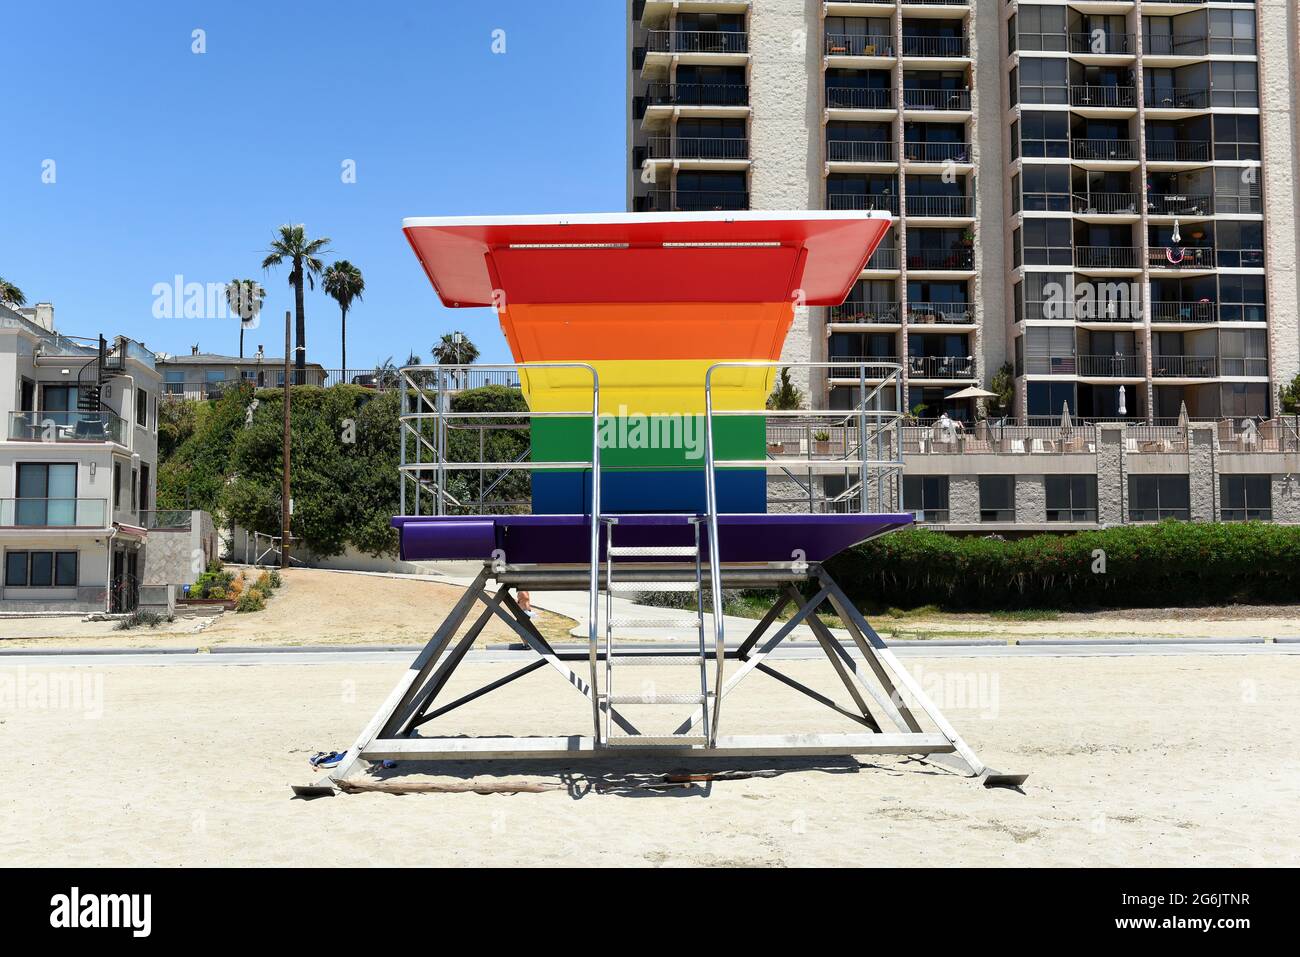 LONG BEACH, CALIF - 5 juillet 2021 : Pride Tower, sur Shoreline Way et 12ème PL. La tour de secouriste de couleur arc-en-ciel soutient la communauté LGBTQ. Banque D'Images